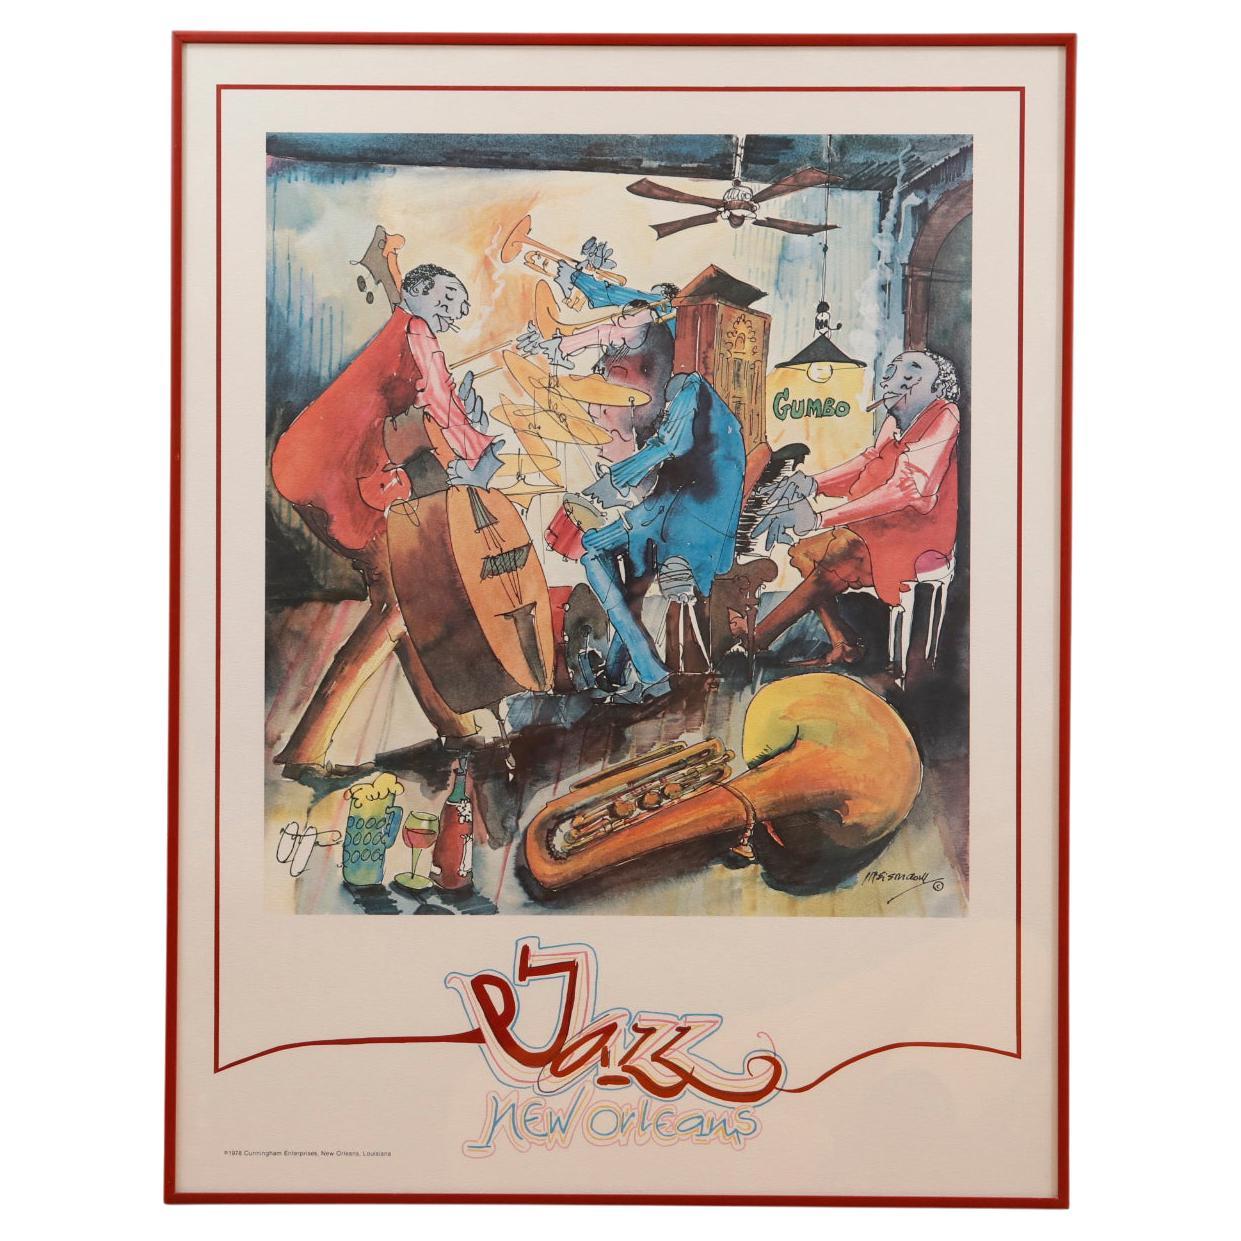 lejesoldat Ideel Opstå 1978 Leo Meiersdorff “Jazz New Orleans” Framed Poster For Sale at 1stDibs |  meiemdom new orleans, leo new poster, 1978 jazz fest poster